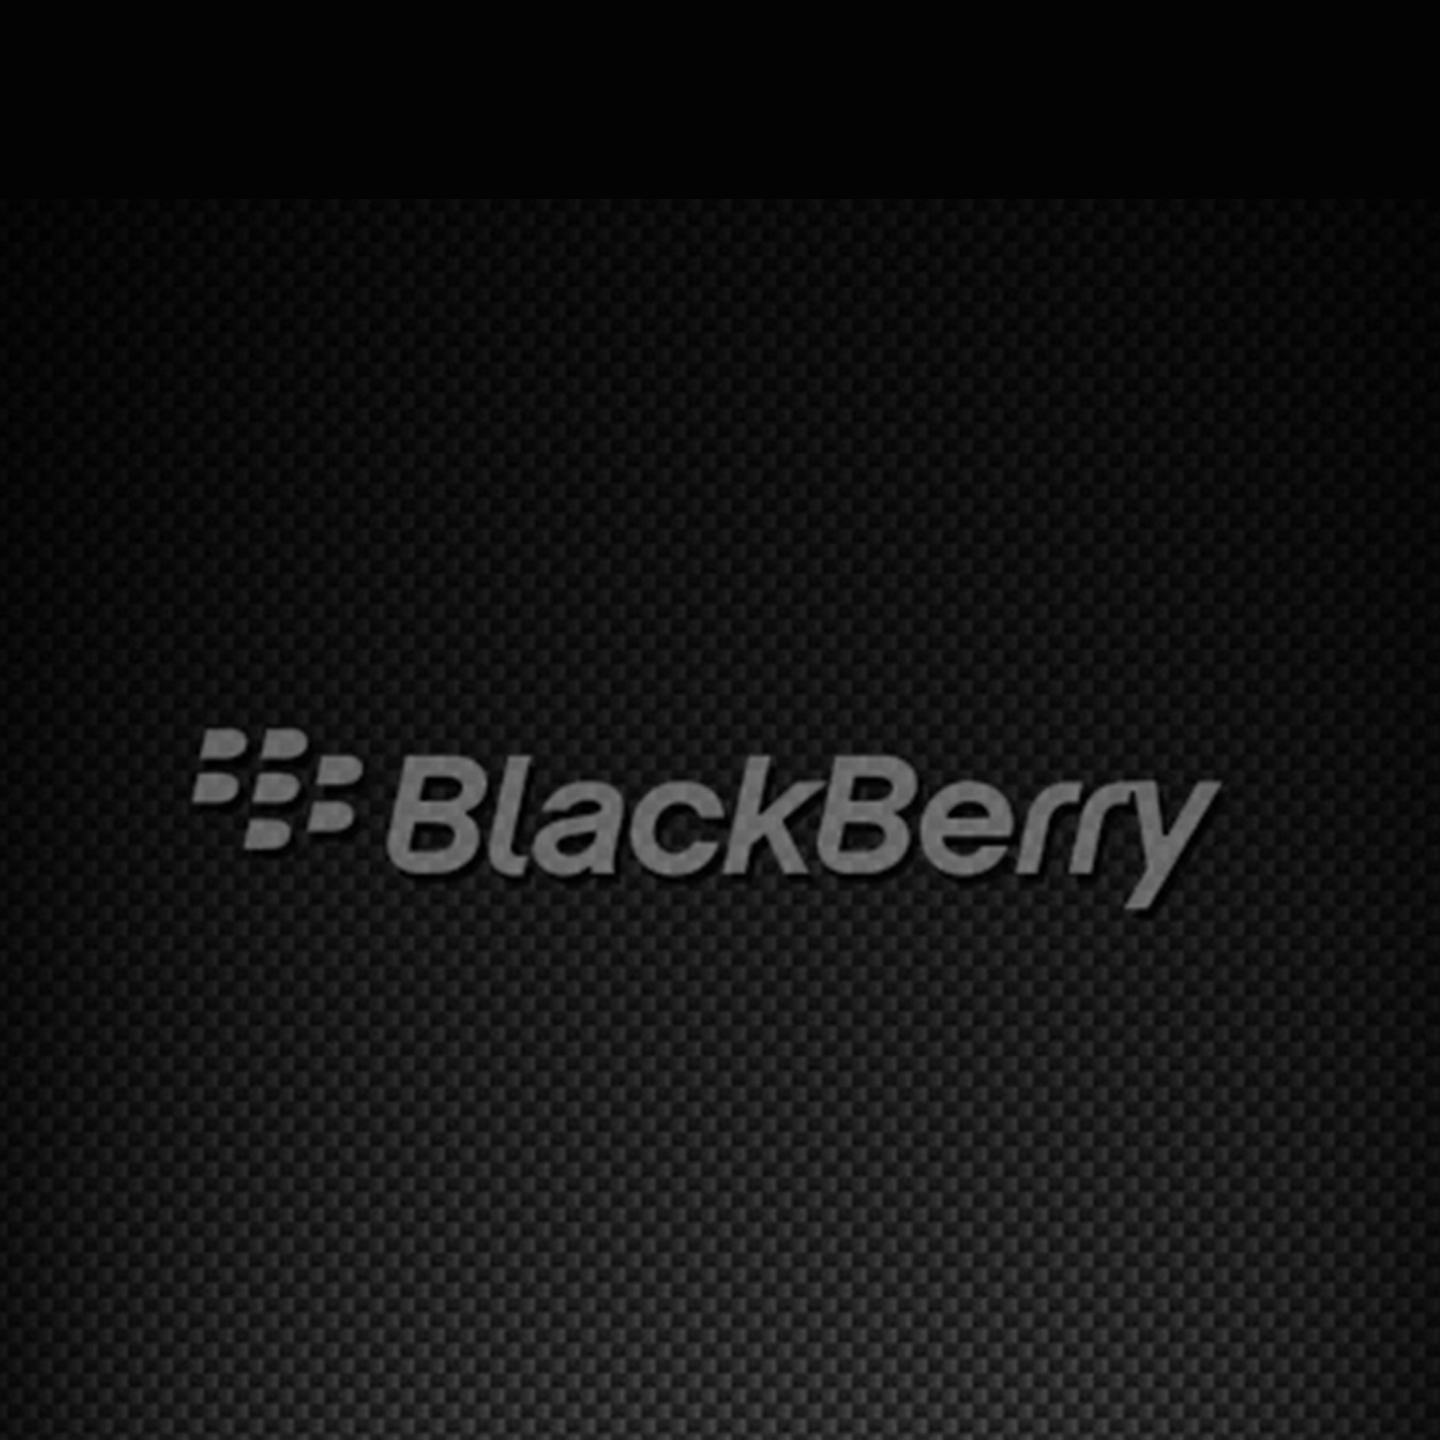 Selected Blackberry Wallpaper For Blackberry Fuzz Wallpaper - Blackberry -  1440x1440 Wallpaper 